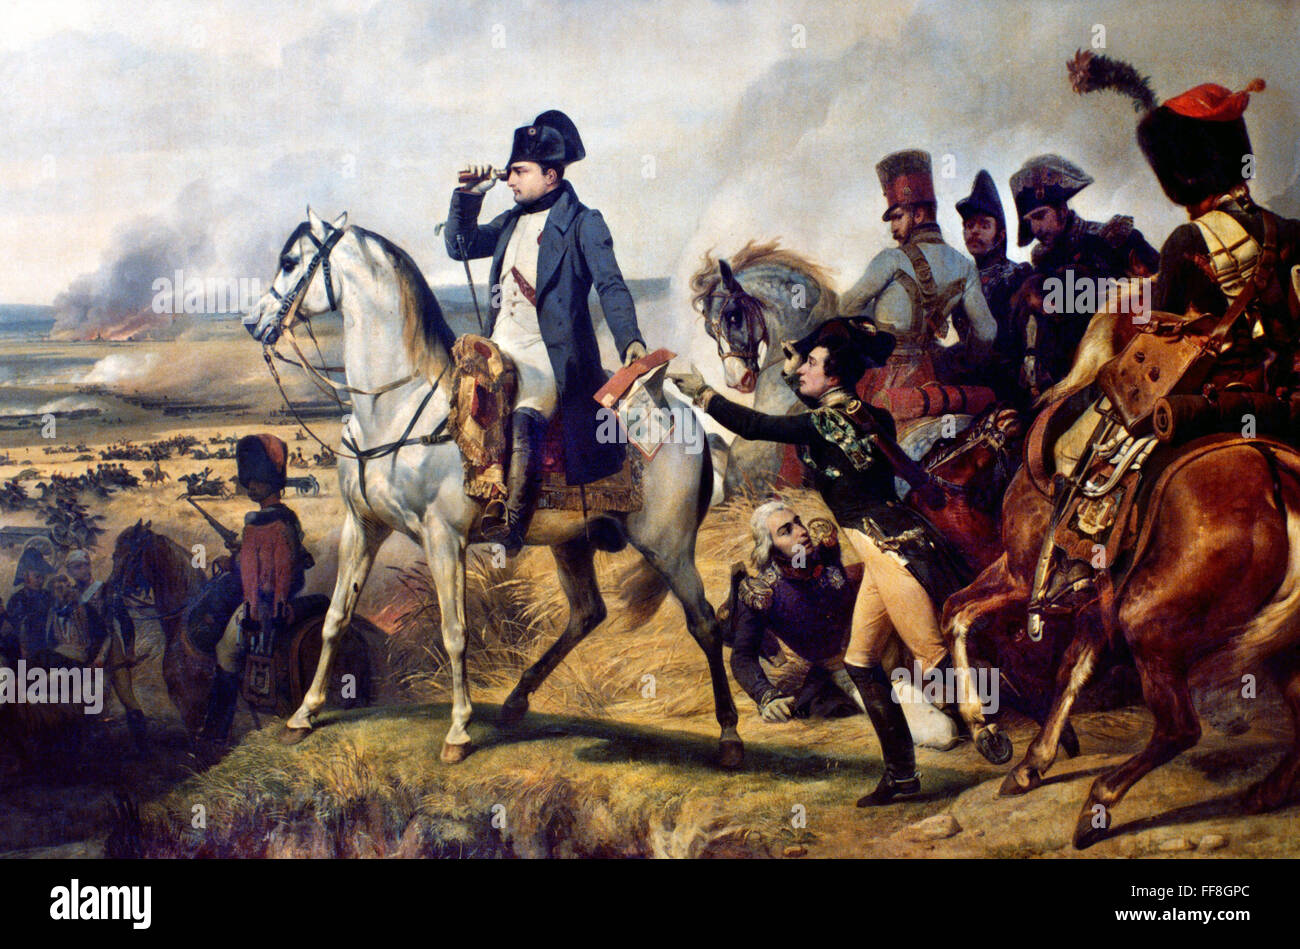 NAPOLEON BONAPARTE /n(1769-1821). Kaiser von Frankreich, 1804-1814. Schlacht von Wagram 1809. Öl auf Leinwand, 1836, von Horace Vernet. Stockfoto